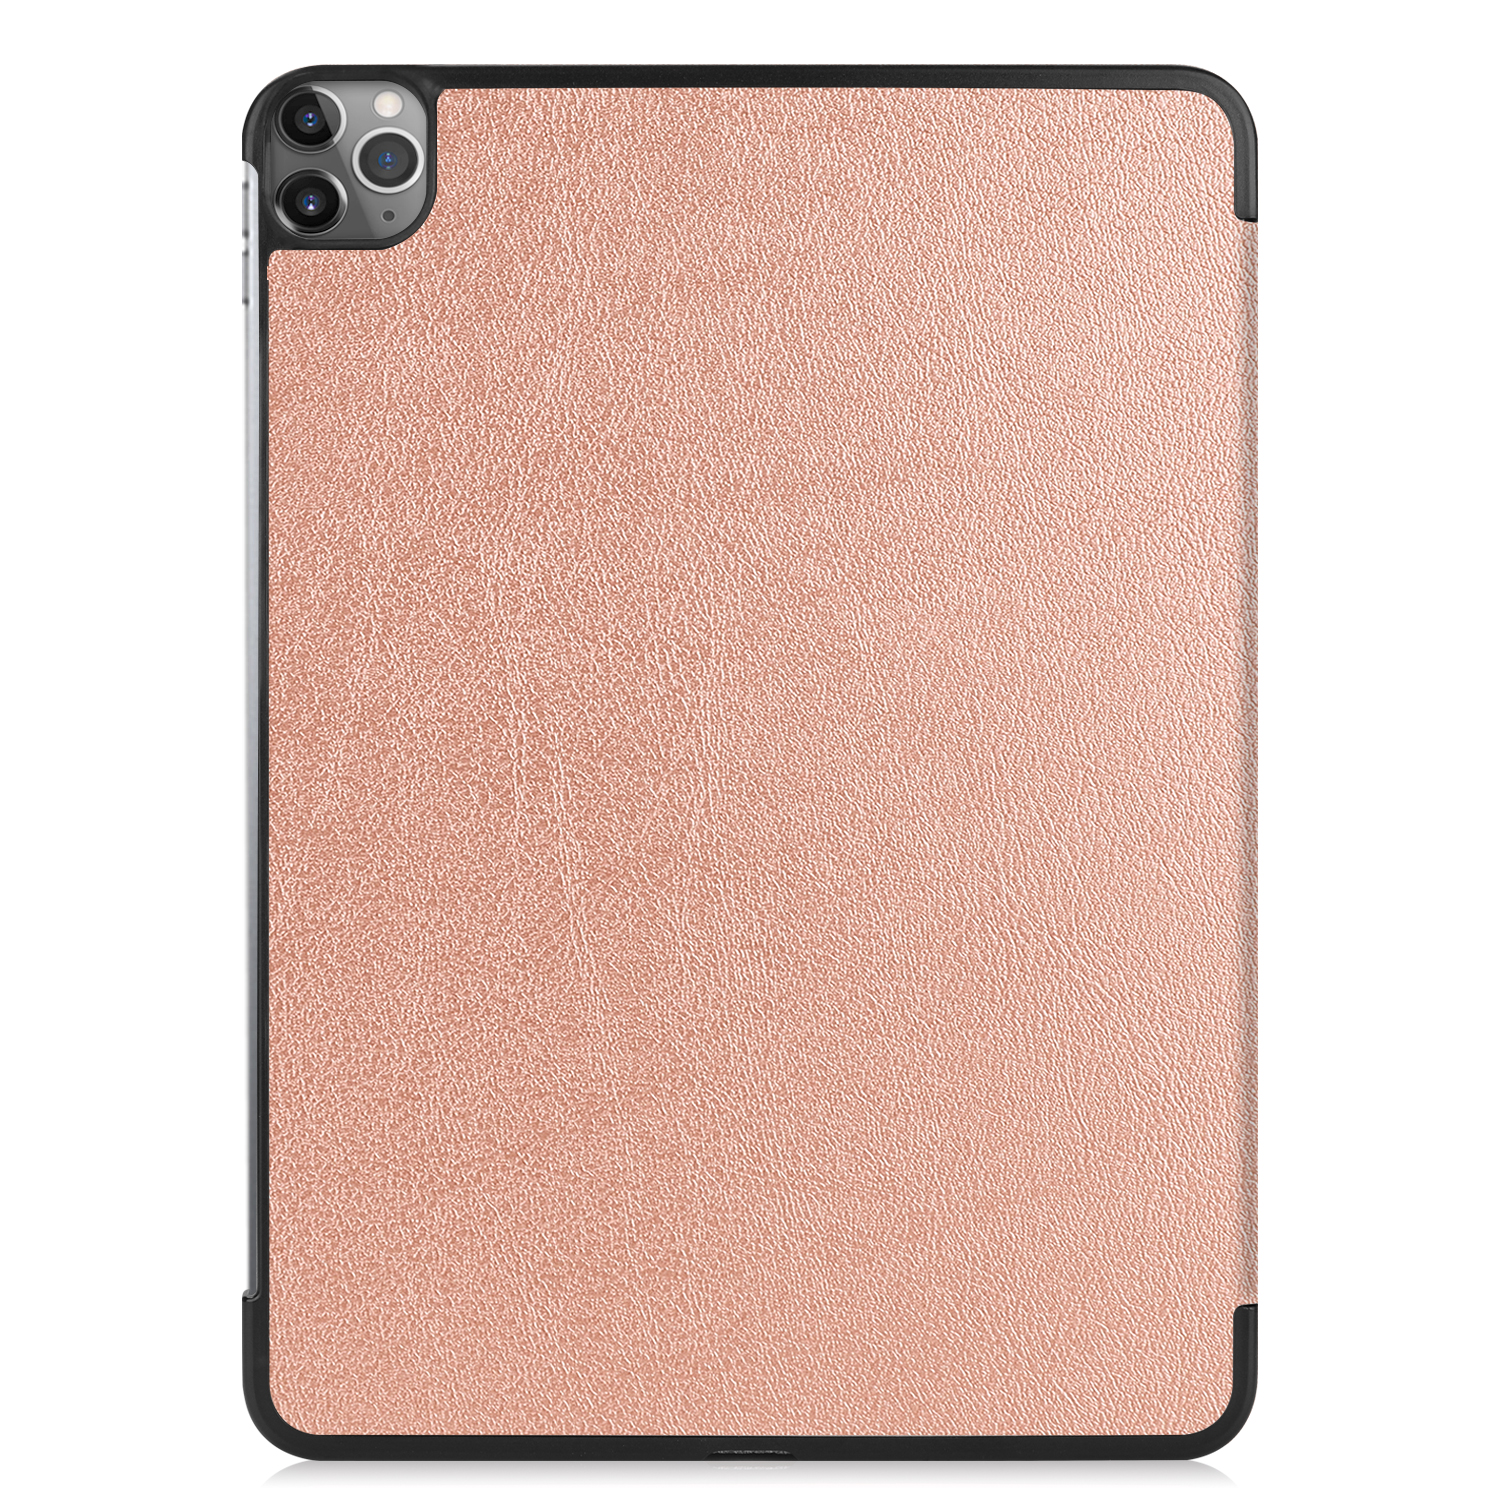 LOBWERK Hülle für Pro iPad Apple Bookcover 2020 Schutzhülle 12.9 Kunstleder, bronze 12.9